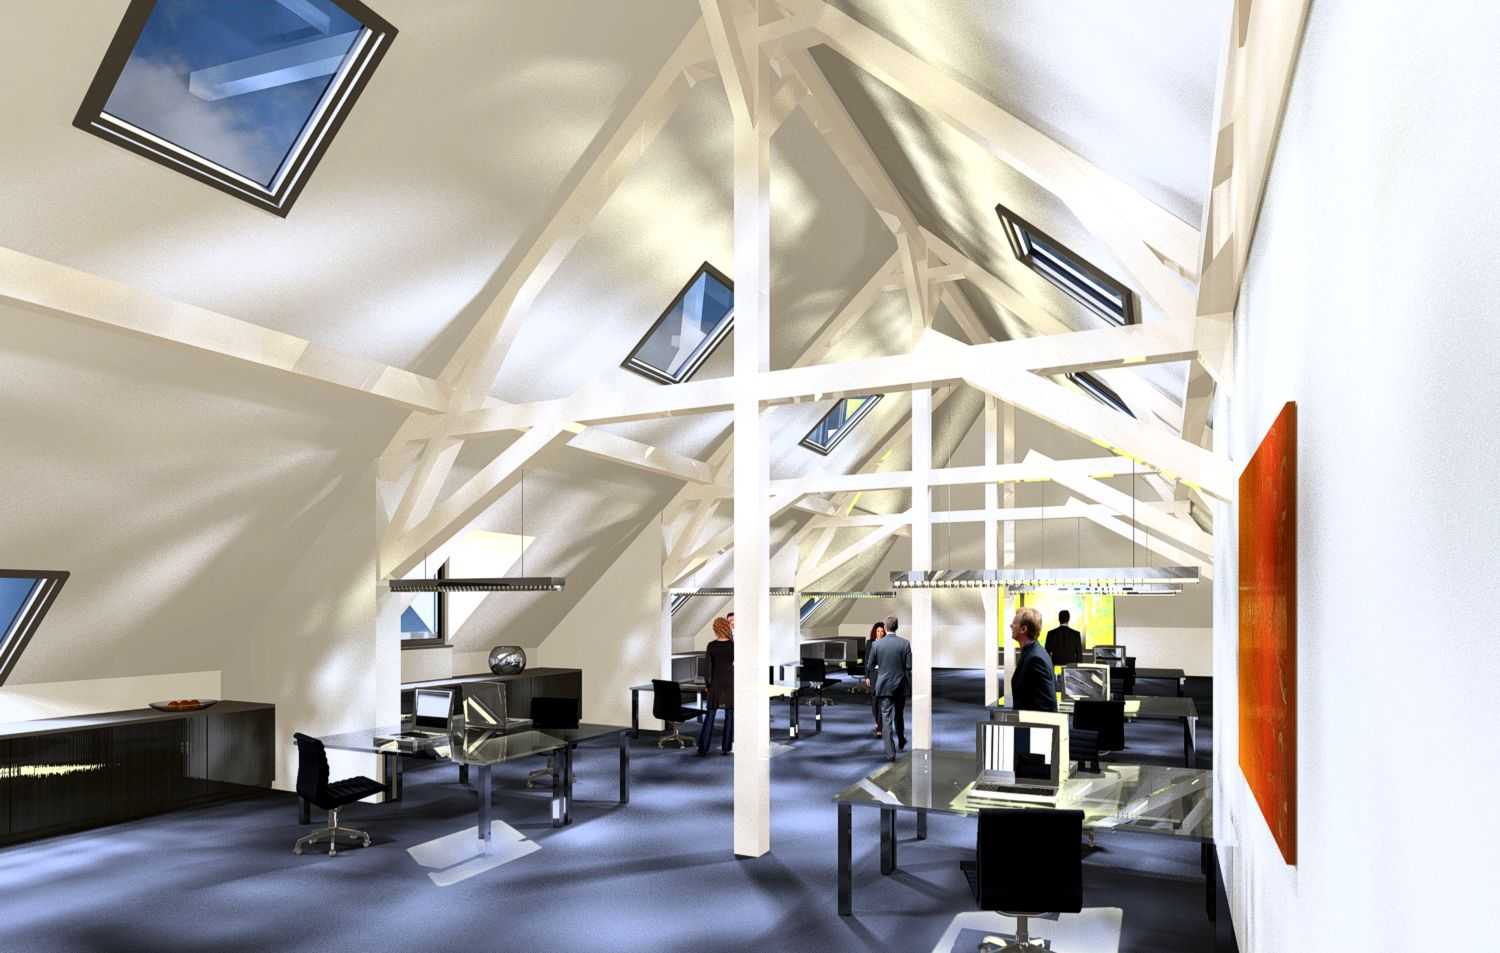 3D Architektur Visualisierung Ausbau eines Dachstuhls in Büroräumlichkeiten für Weber + Lang Architekten GmbH aus Hersbruck. Jahr 2008